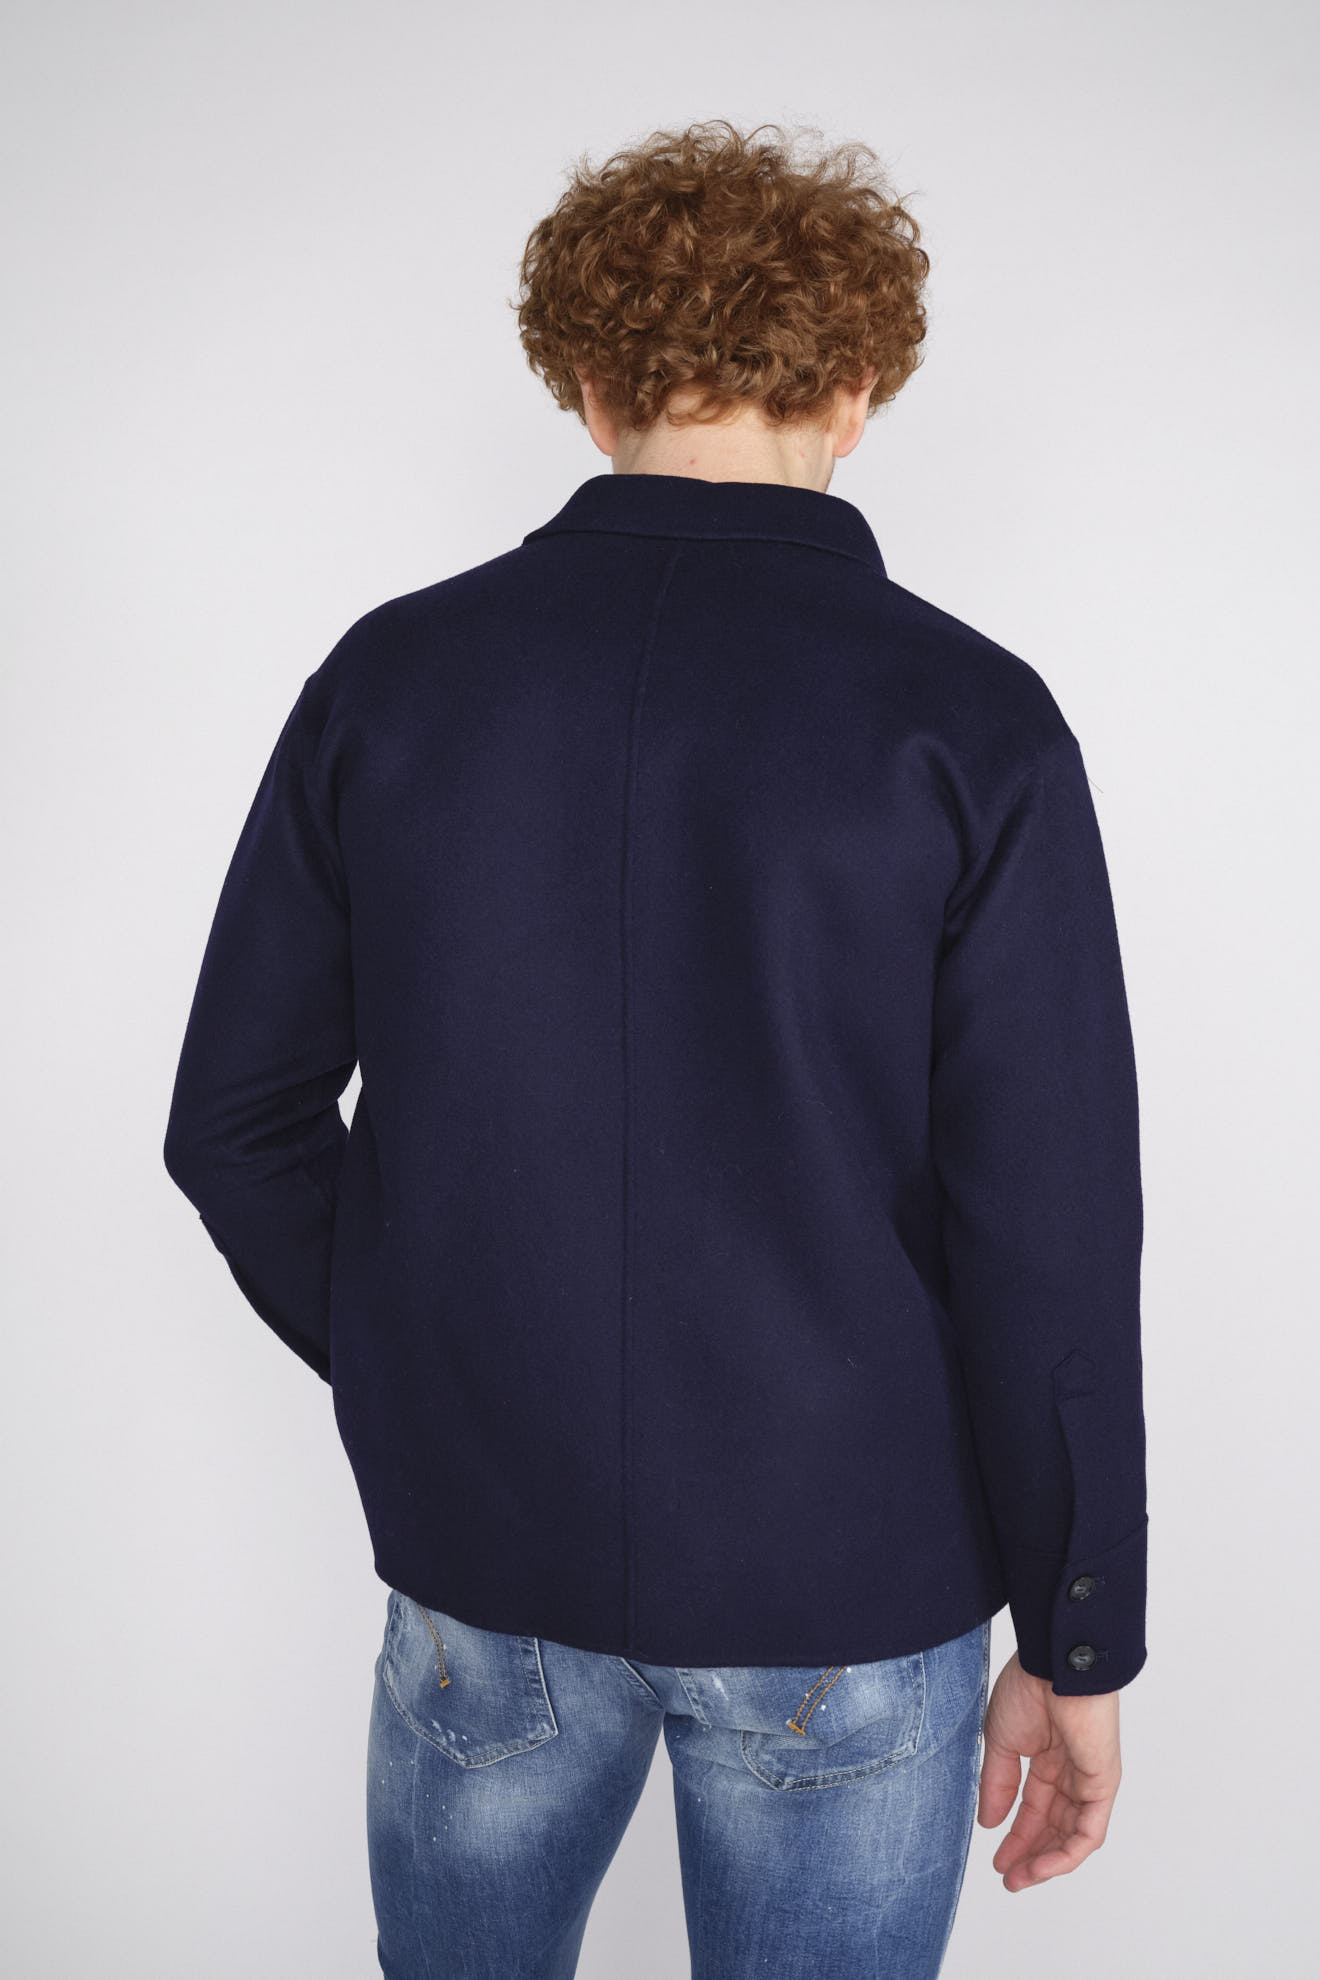 Arma Zane - Oversized Jacke im Hemdstil aus Wolle blau 50